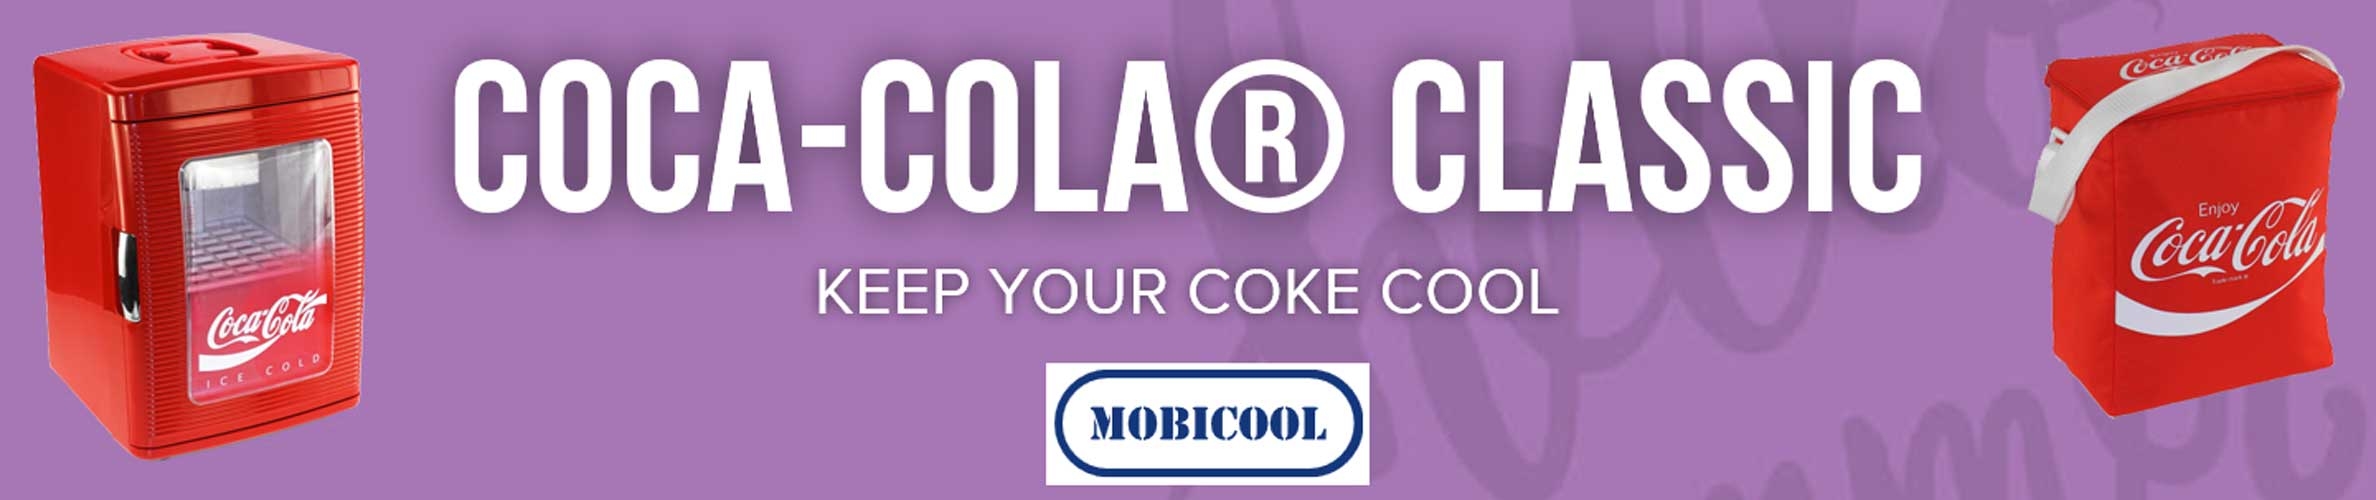 Mobicool-Coca-Cola®